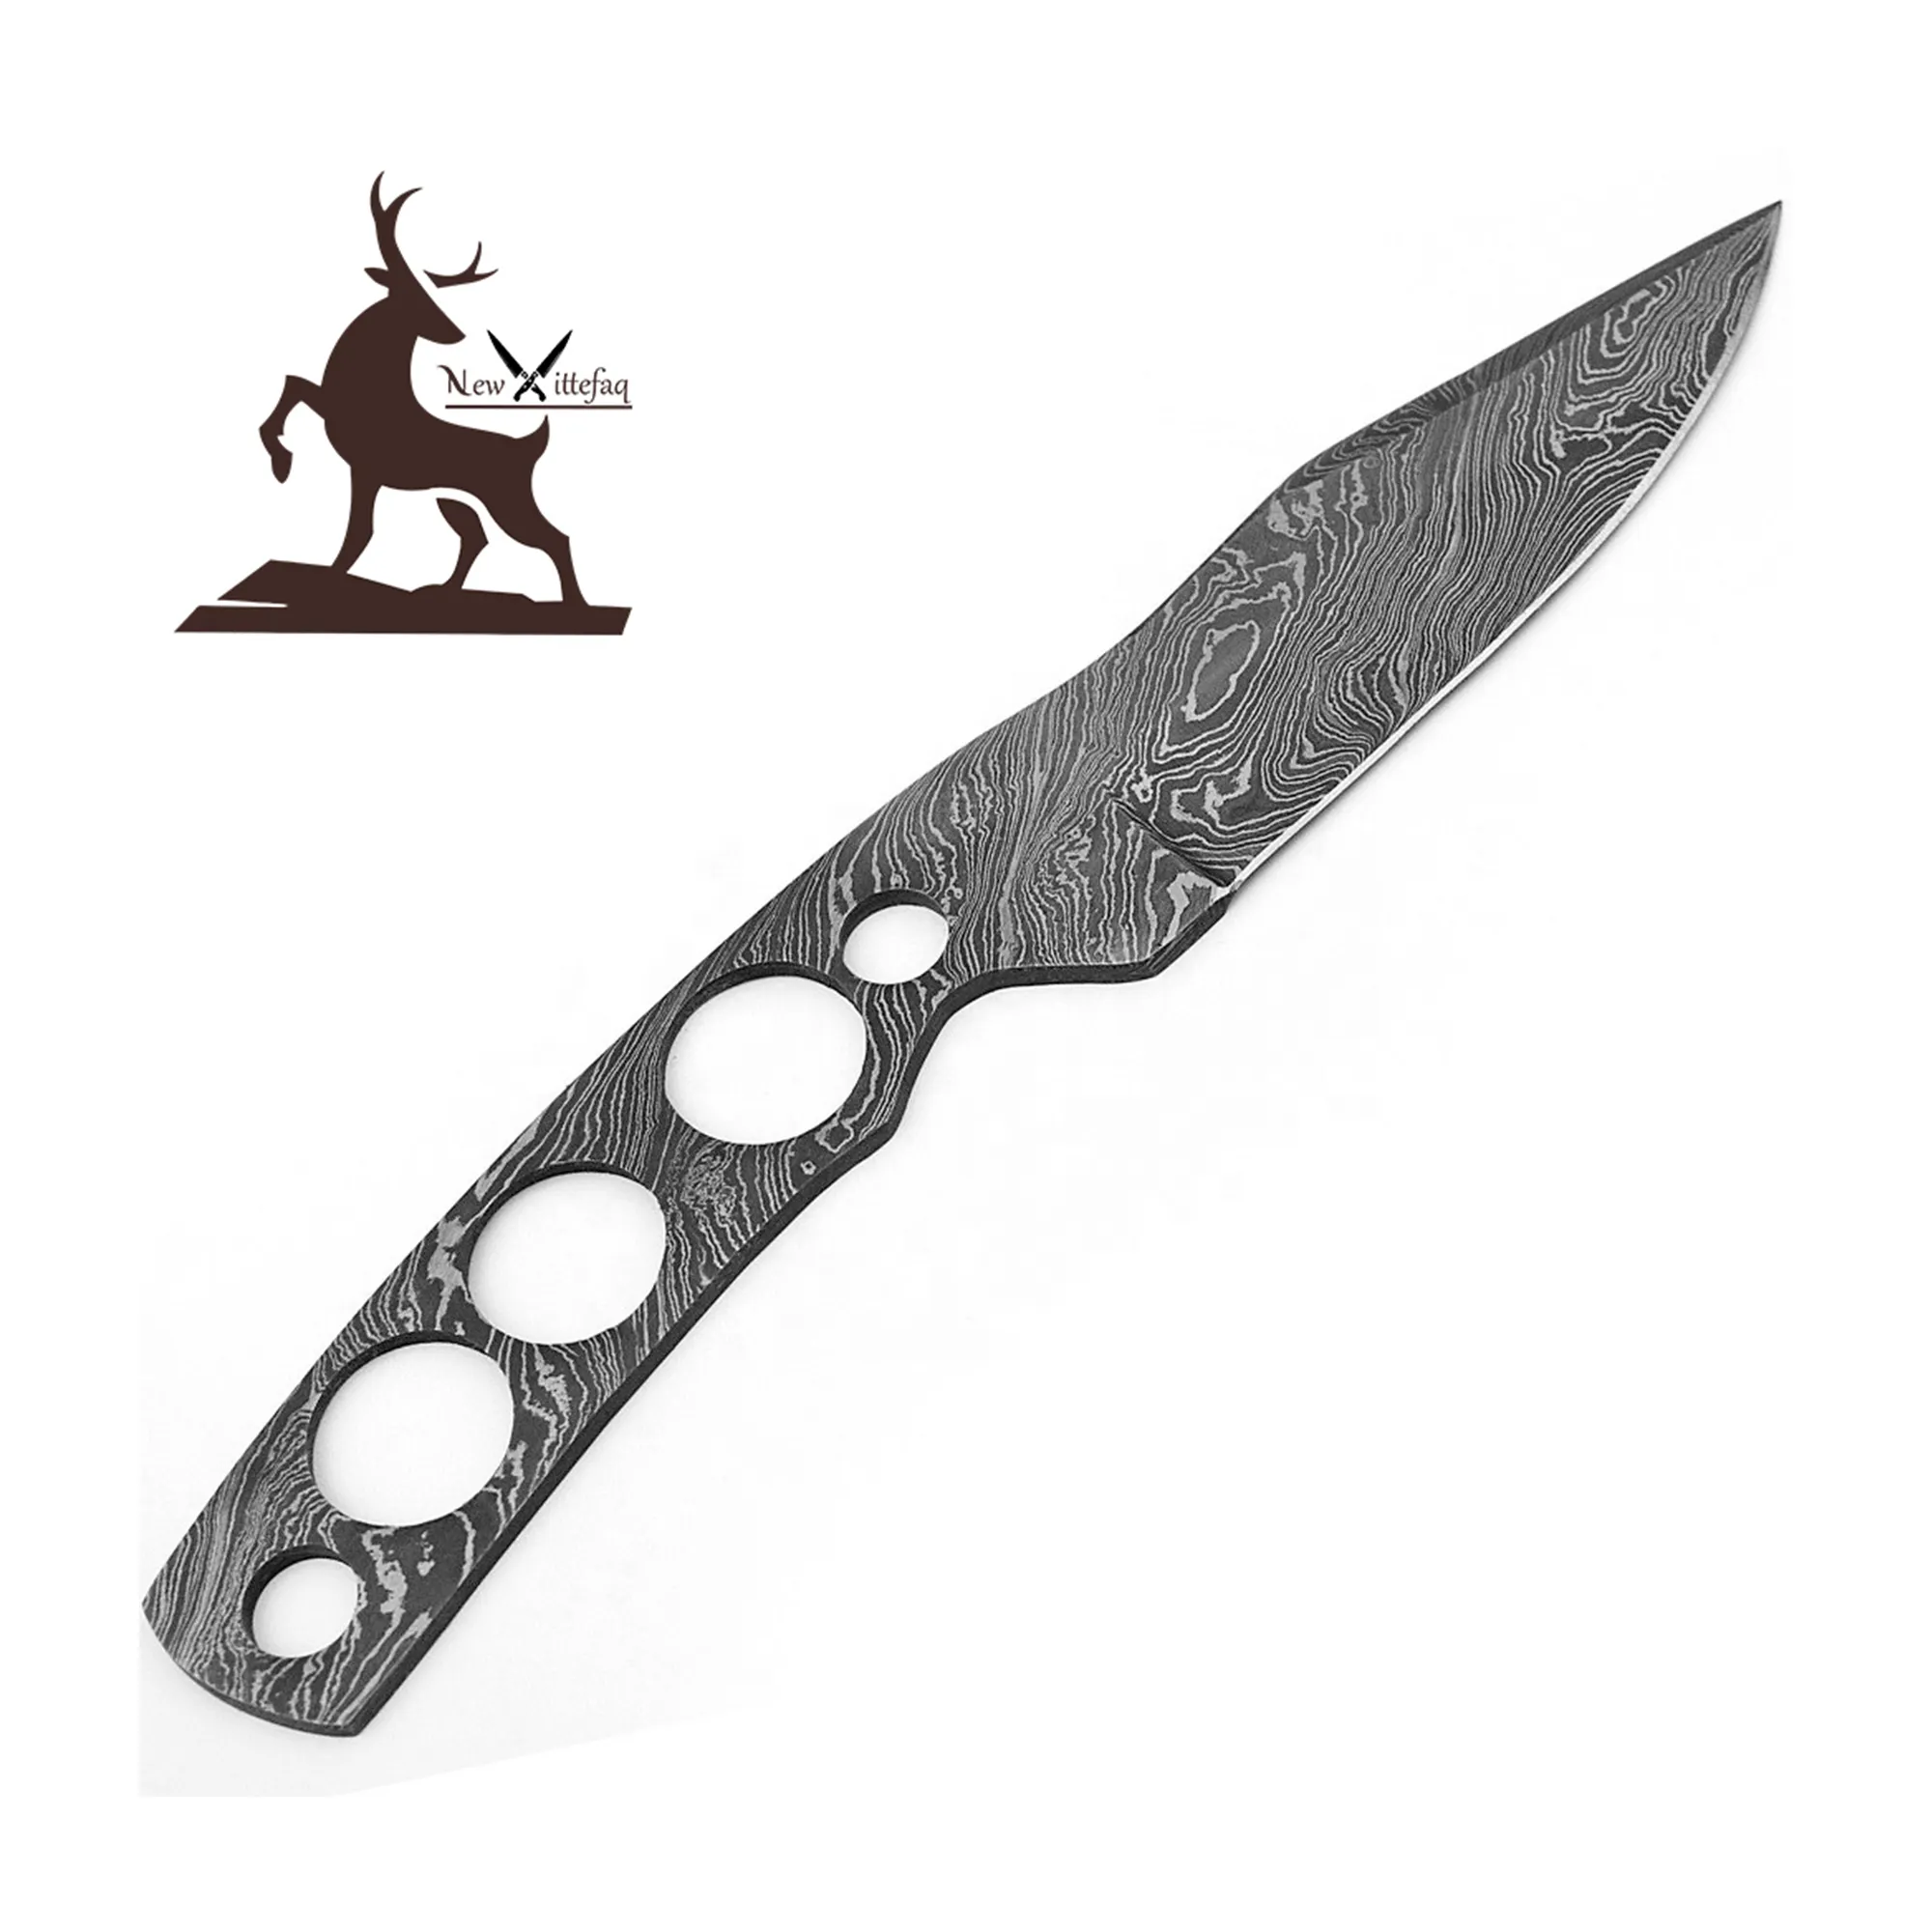 Cuchillo de caza de Damasco, hoja en blanco, rastreador, cuchillo táctico de supervivencia, hoja de sierra, cuchillos decorativos elegantes